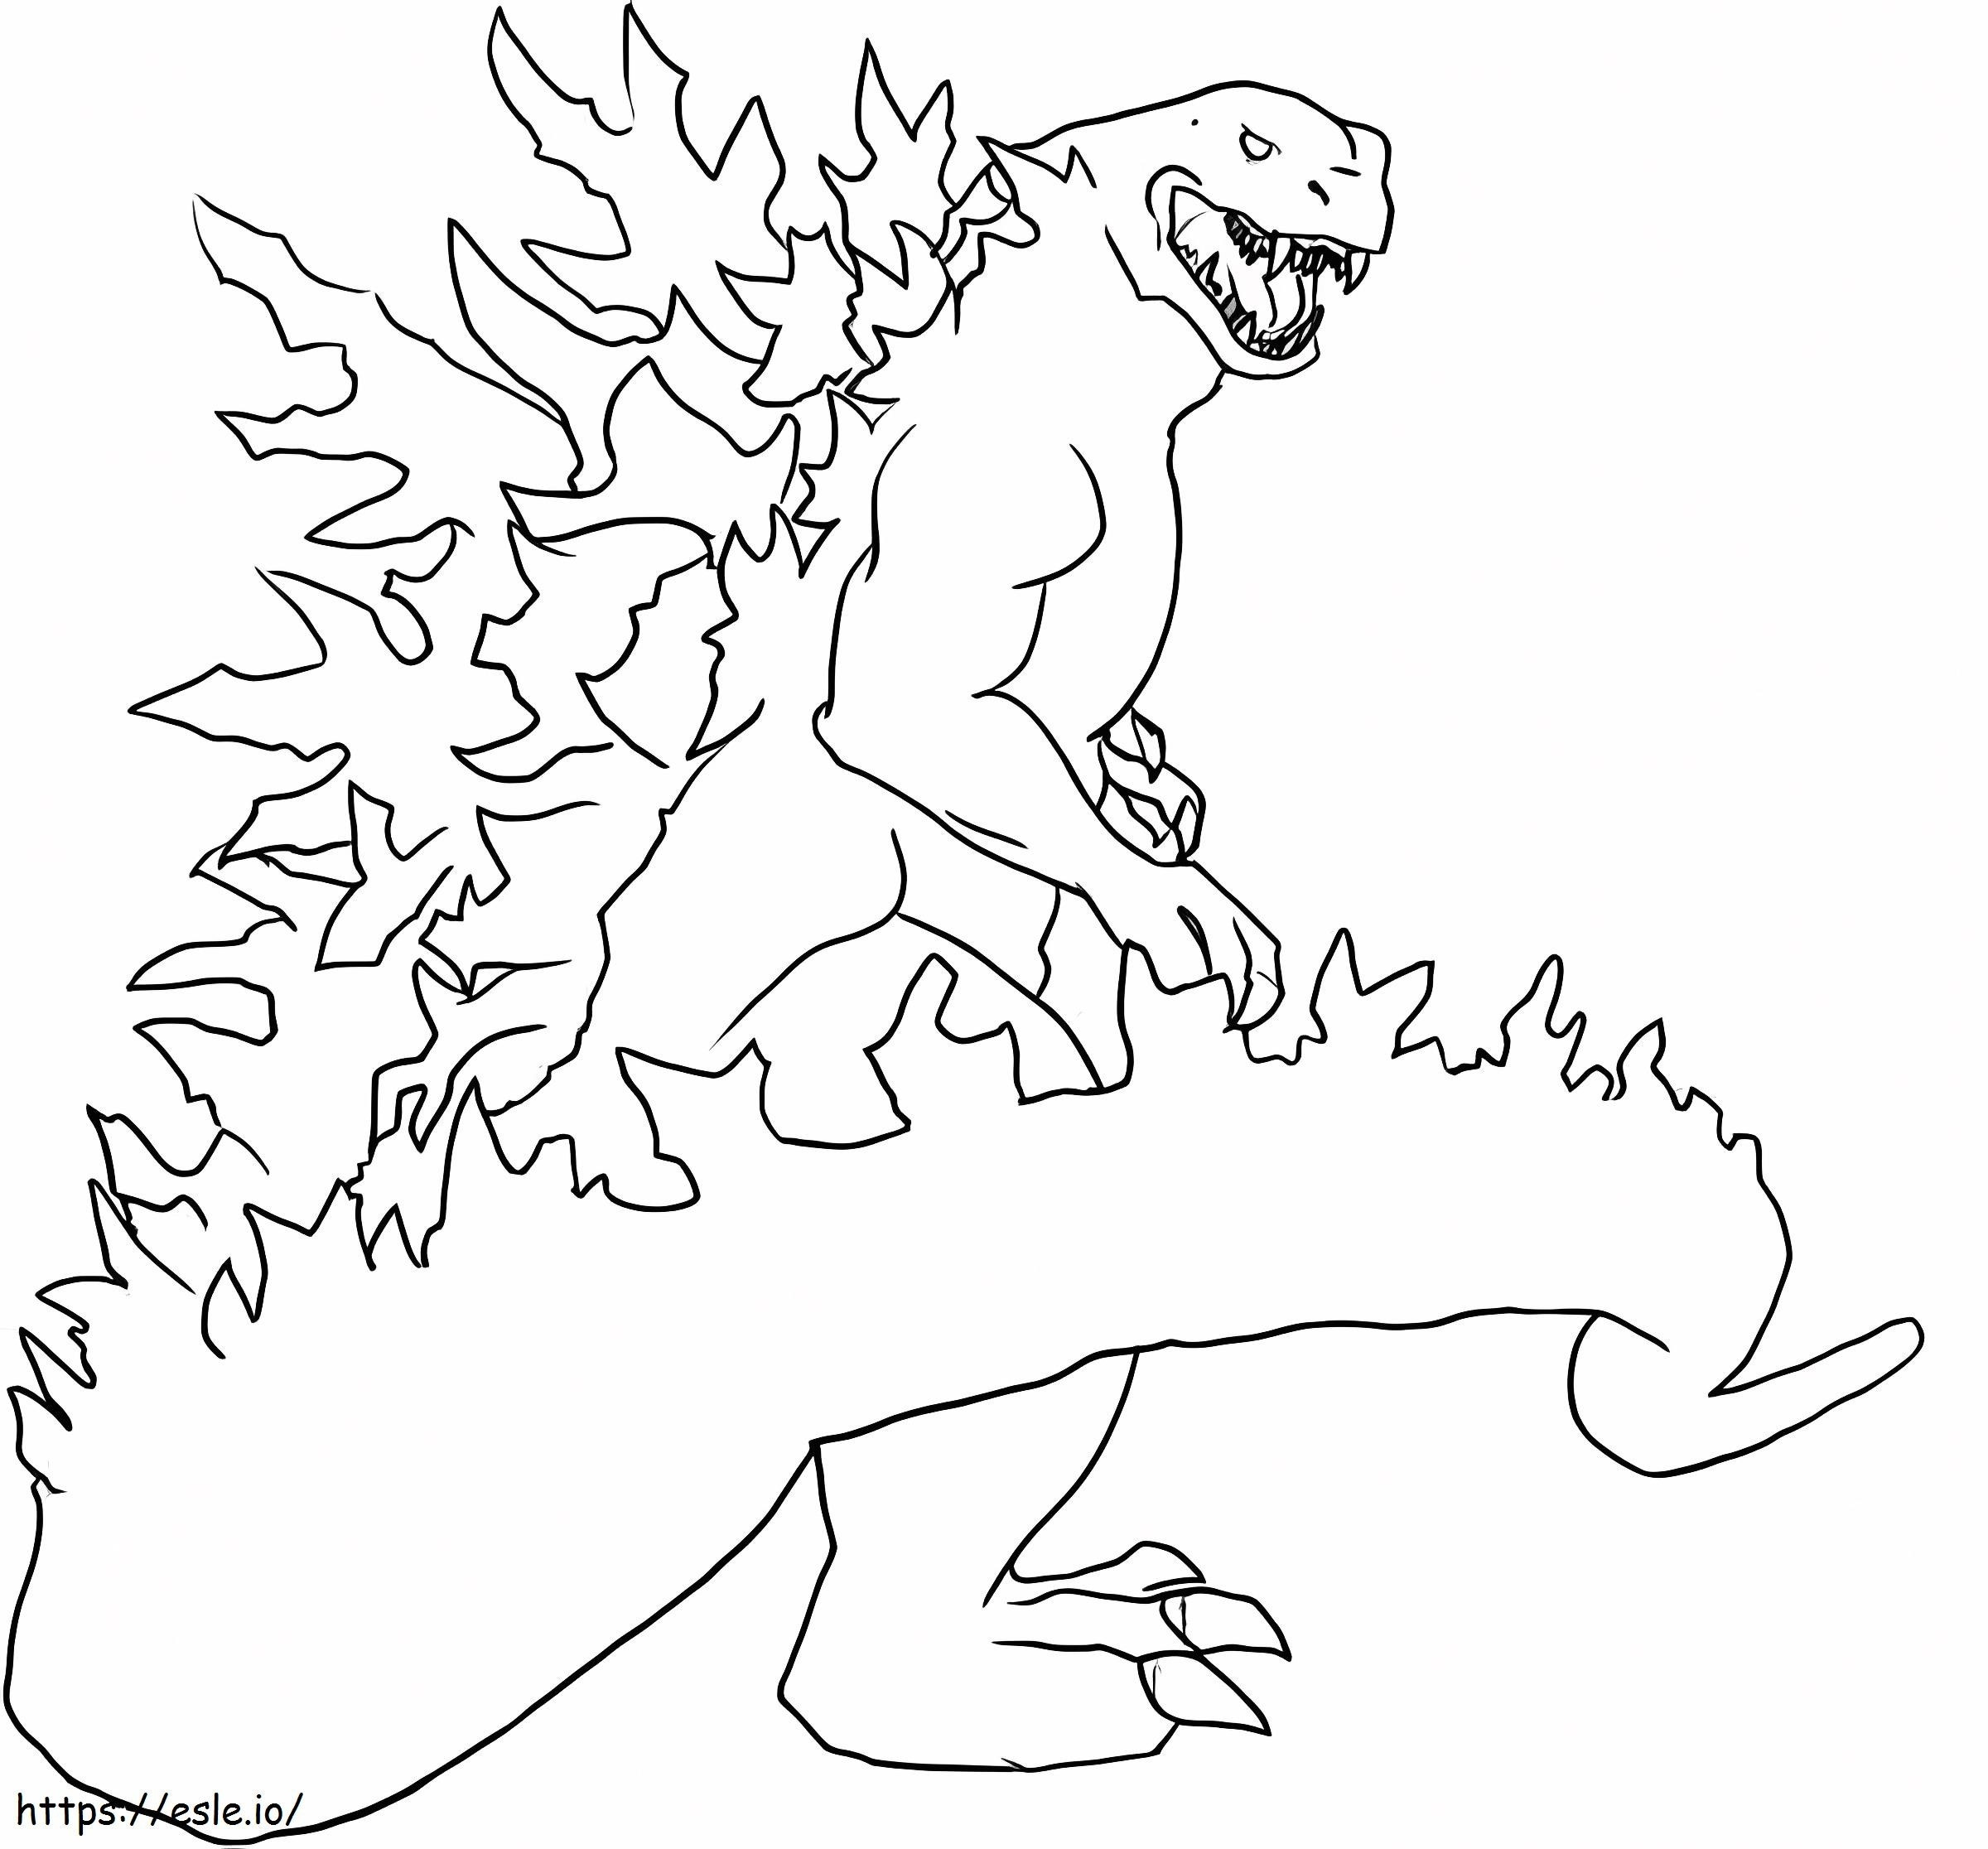 Godzilla das Monster ausmalbilder